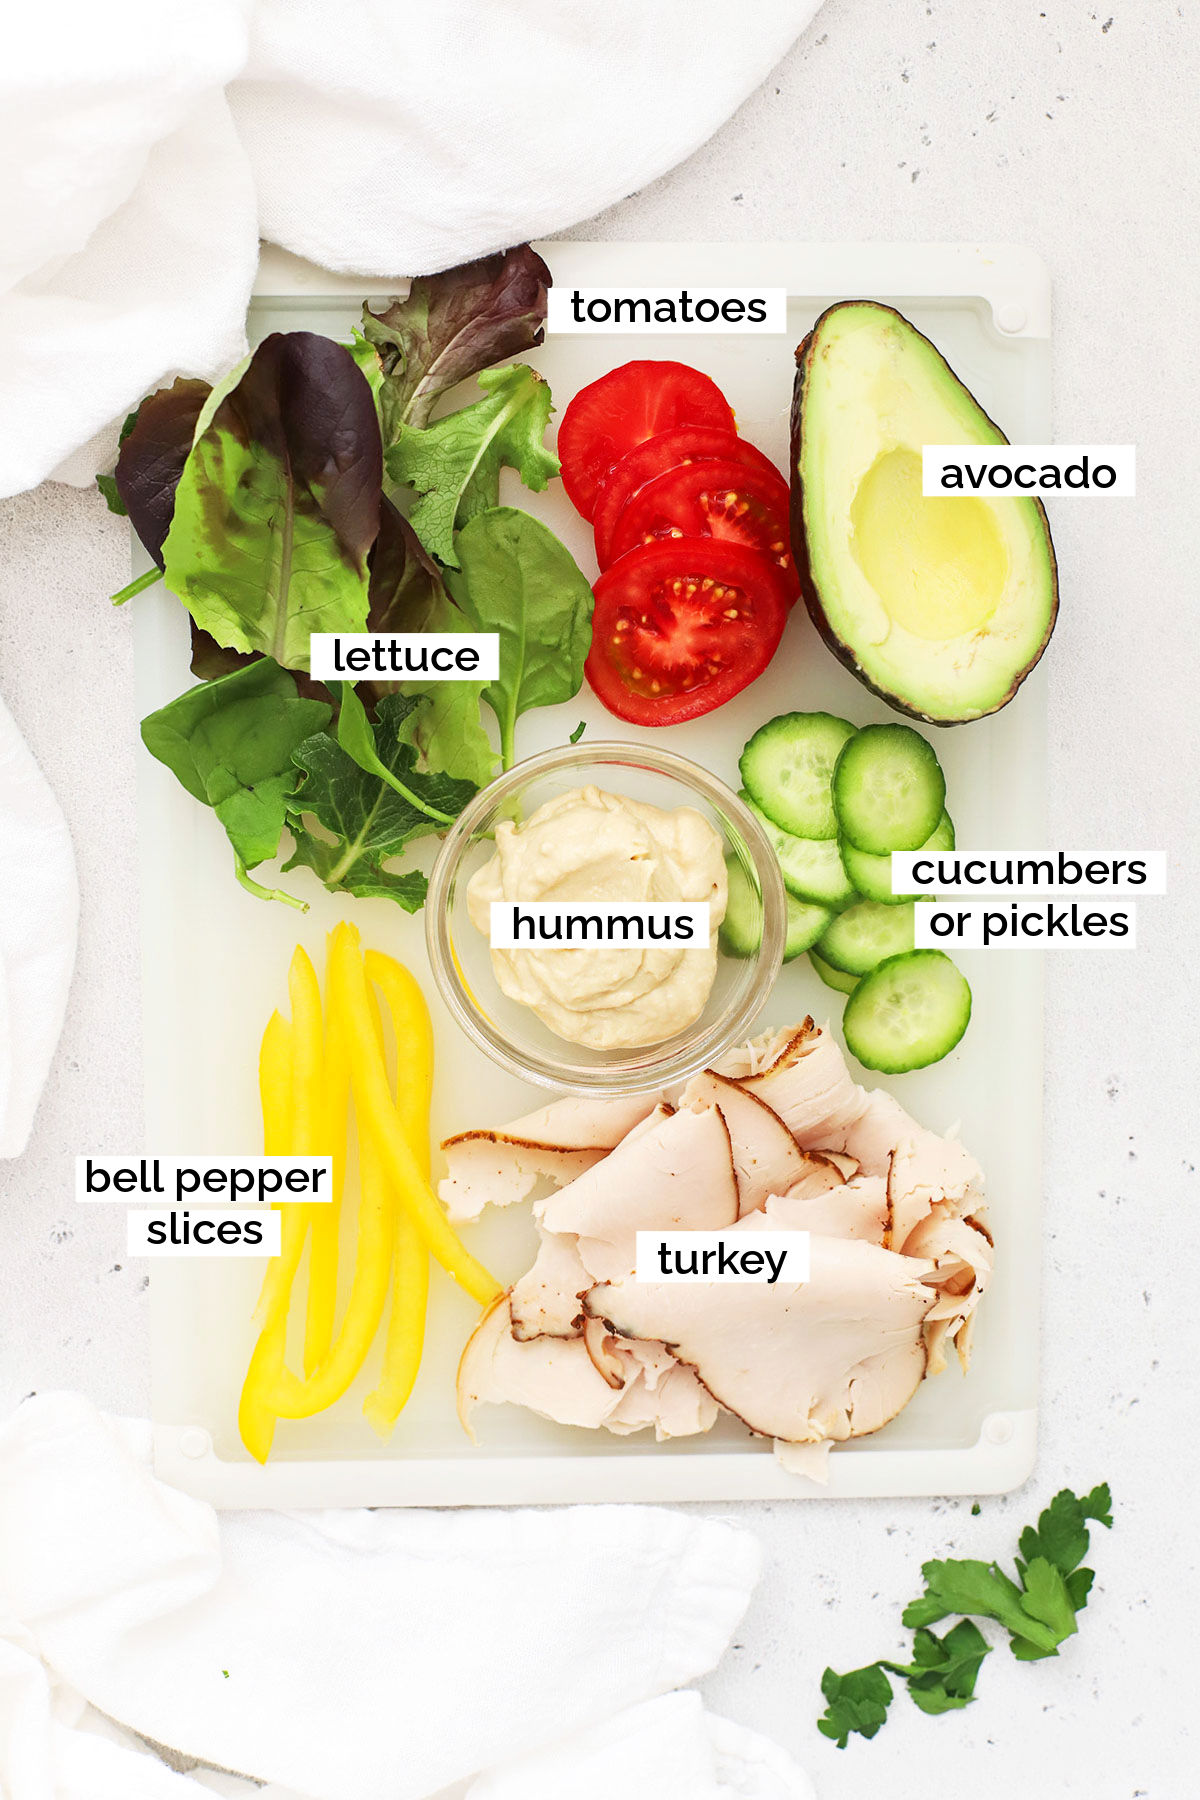 ingredients for hummus turkey wrap sandwich